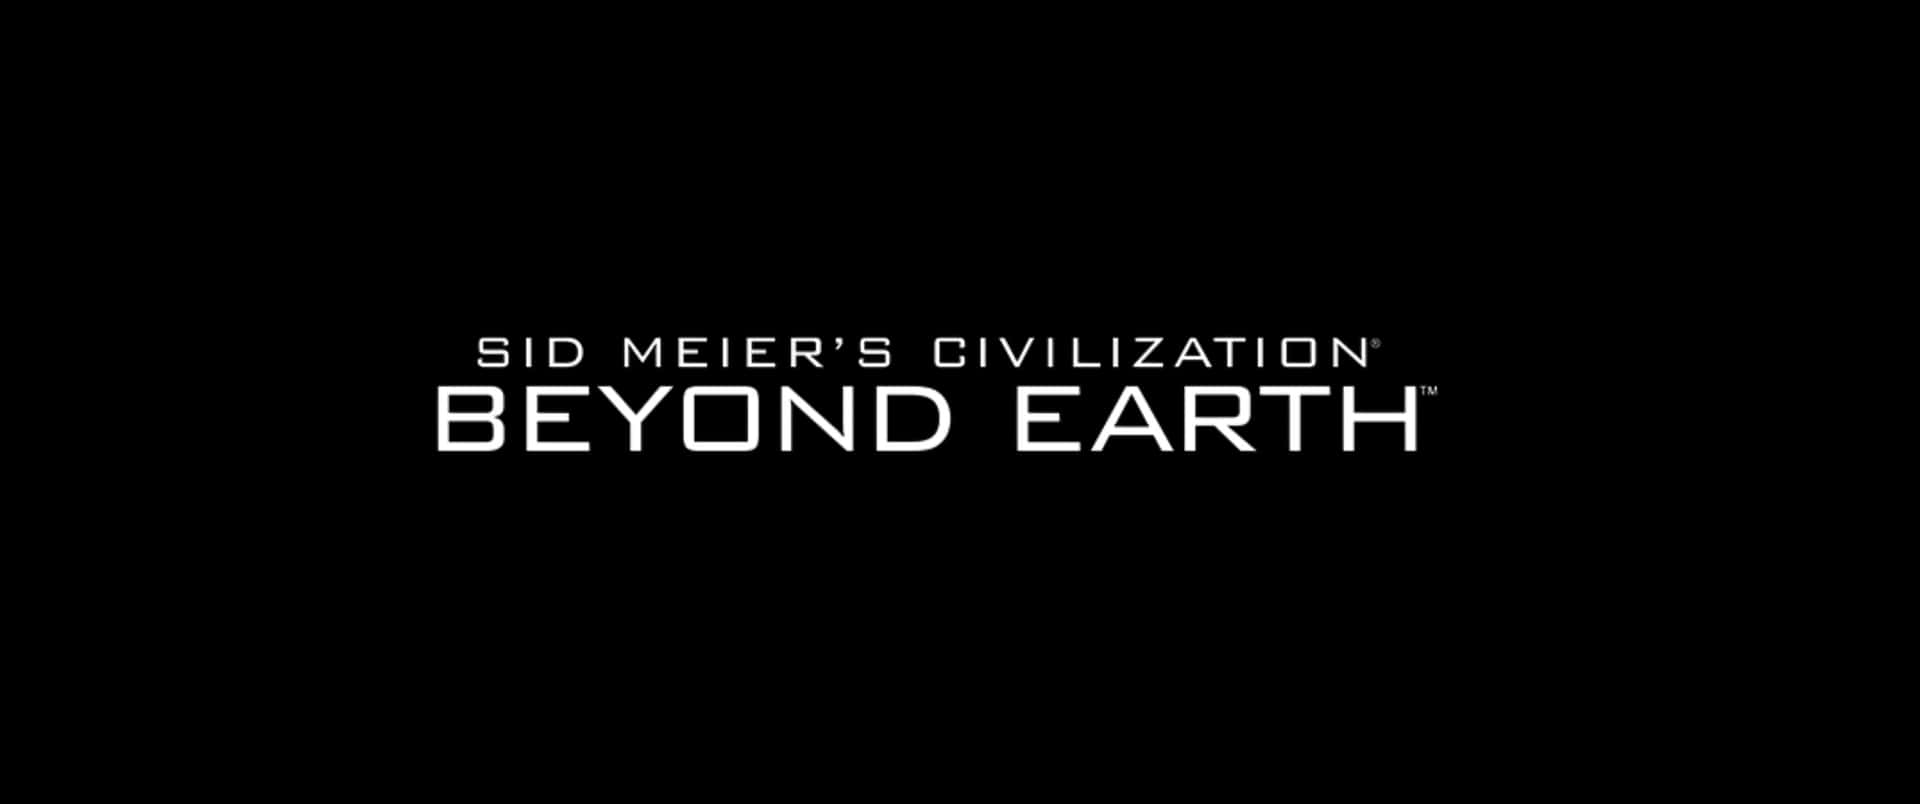 Titolonero Sfondo Civilization Beyond Earth 3440x1440p